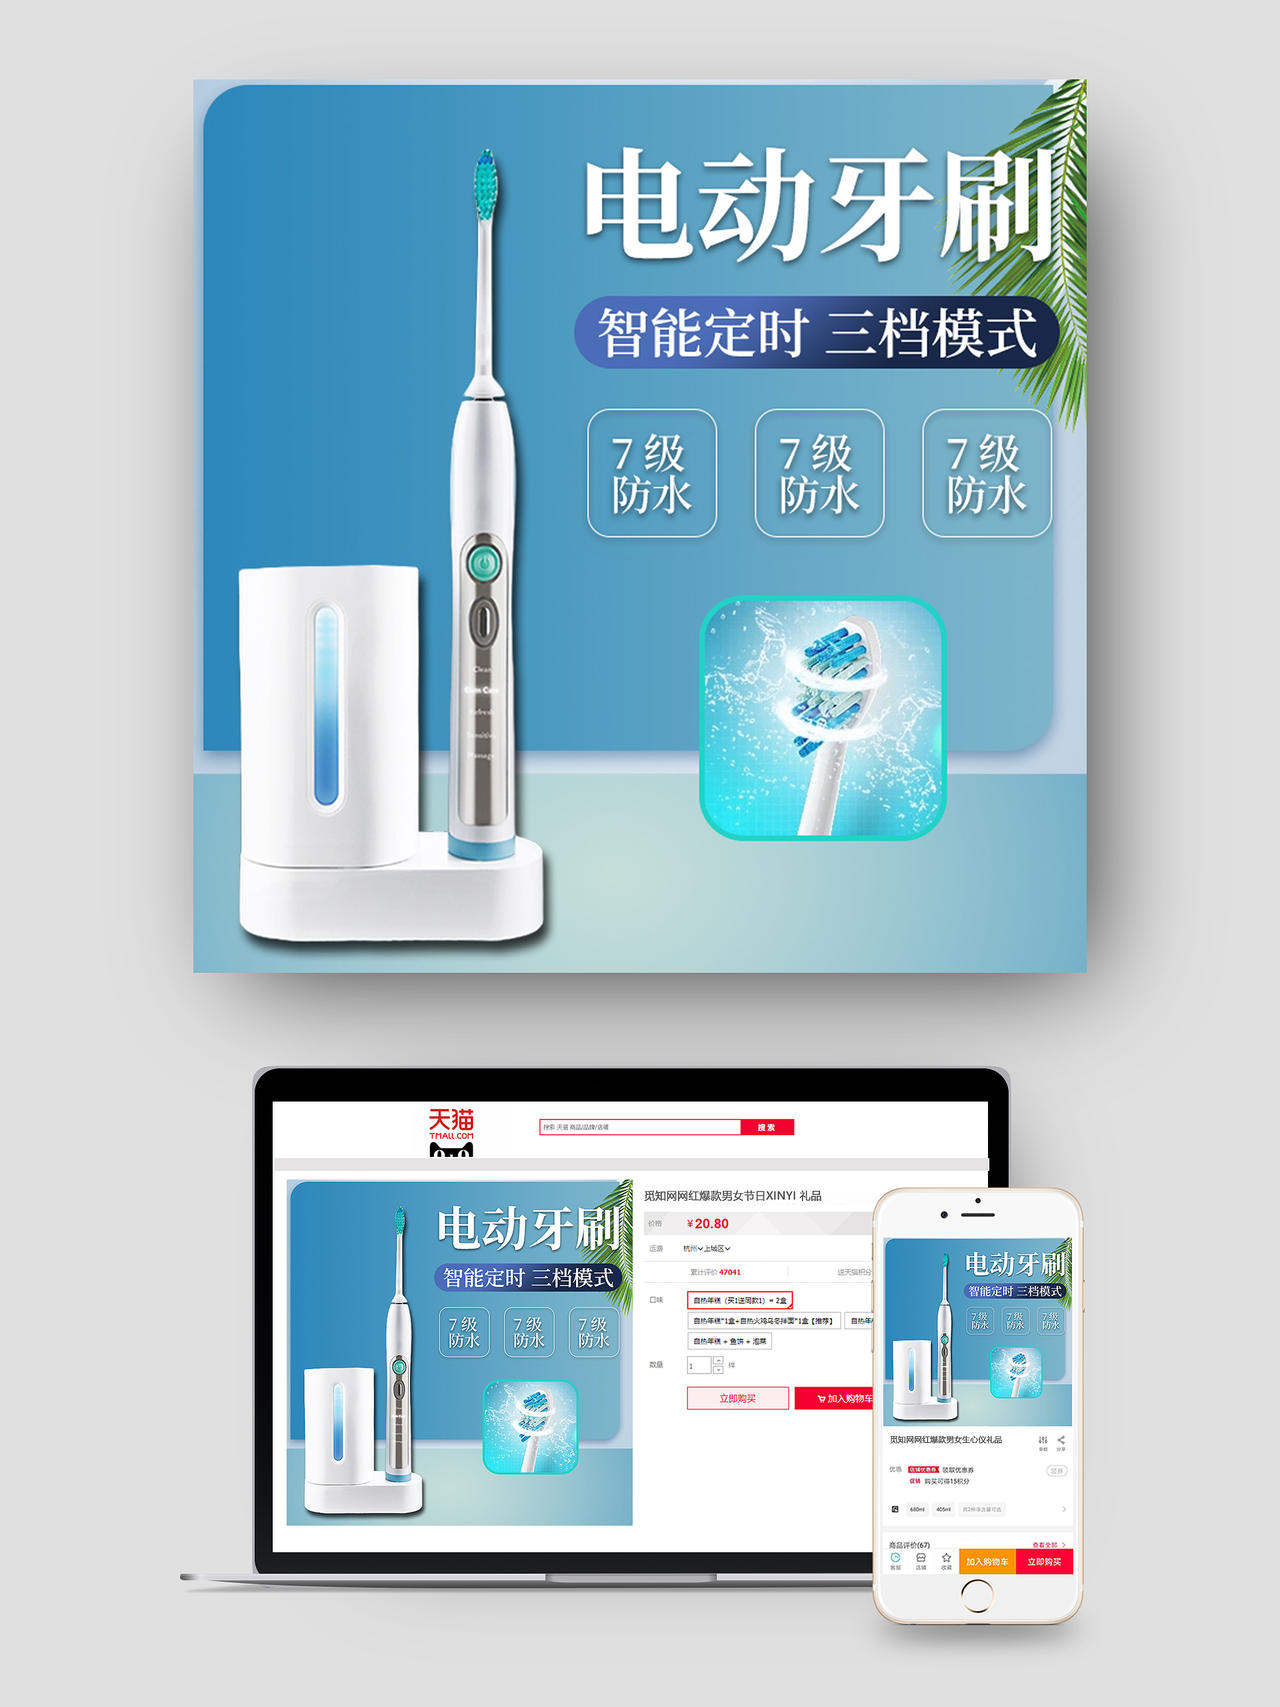 青色简约电动牙刷智能定时7级防水洗护电动牙刷主图